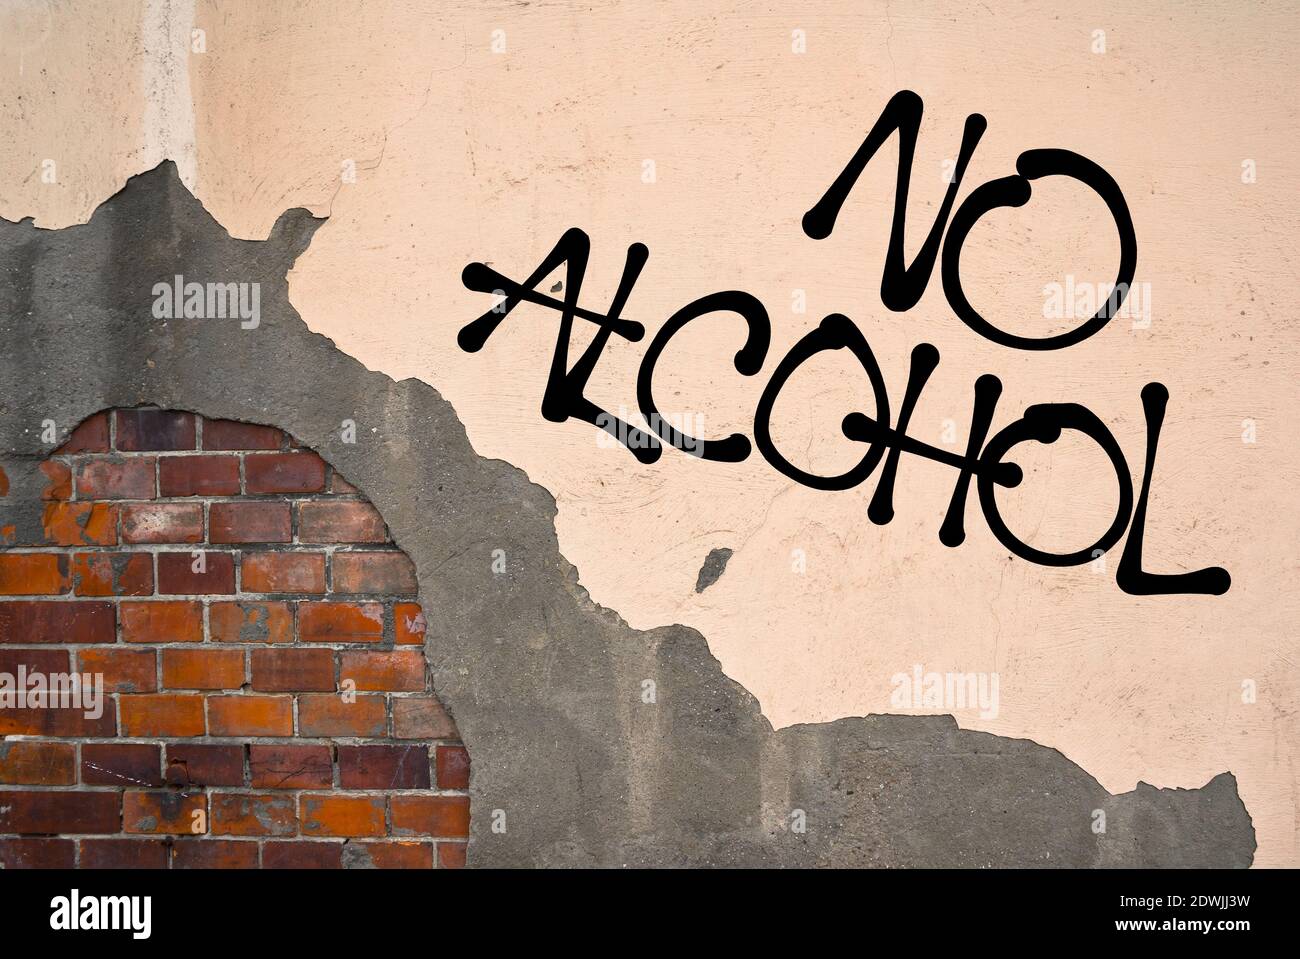 Kein Alkohol - handgeschriebene Graffiti an die Wand gesprüht - Kampf gegen das Trinken. Abstinenz des Abstinenzers - Ablehnung und Verweigerung von alkoholischer Flüssigkeit Stockfoto